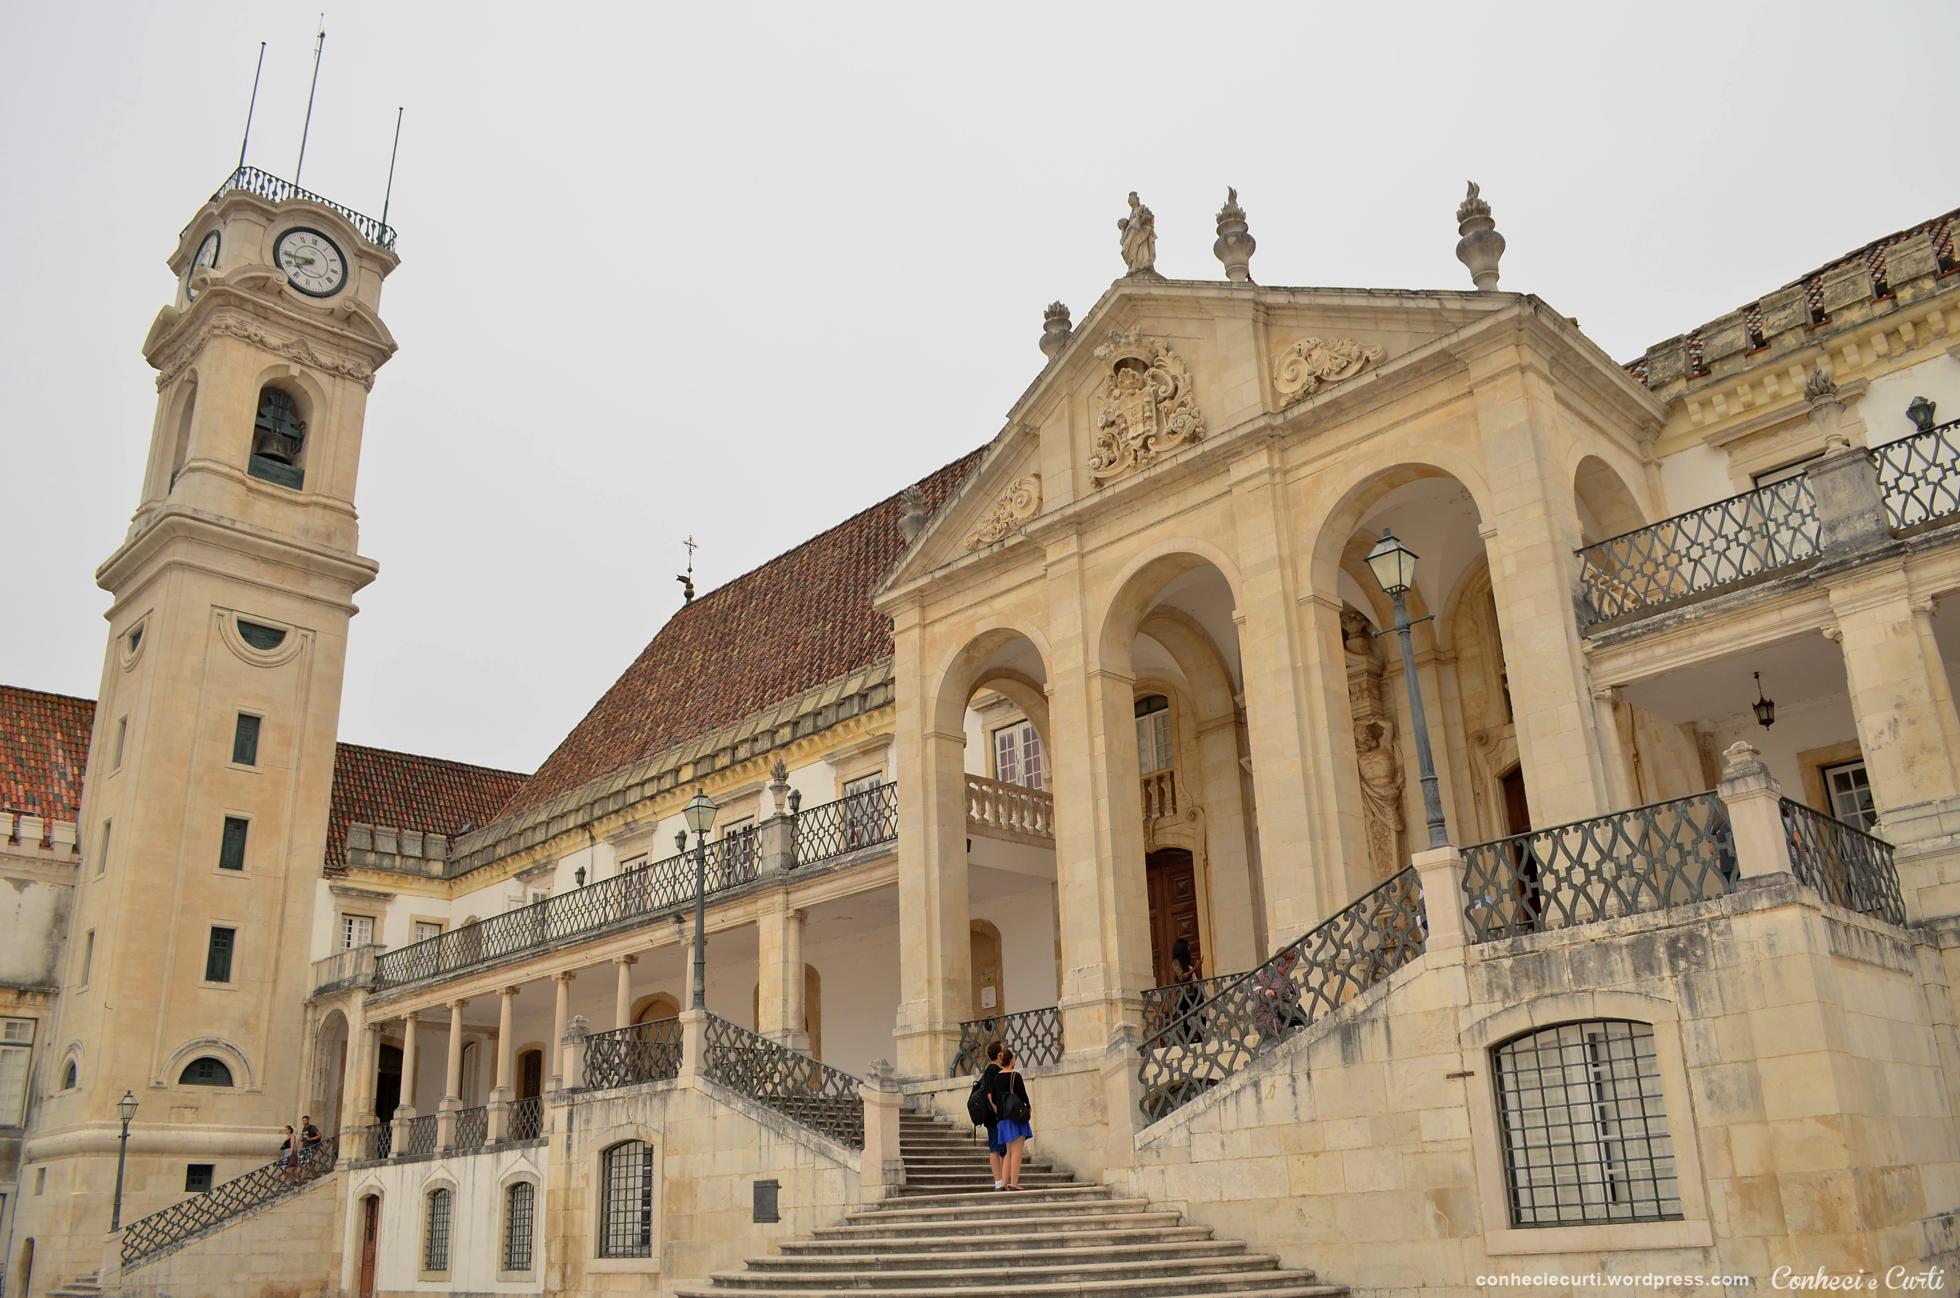 A Universidade de Coimbra